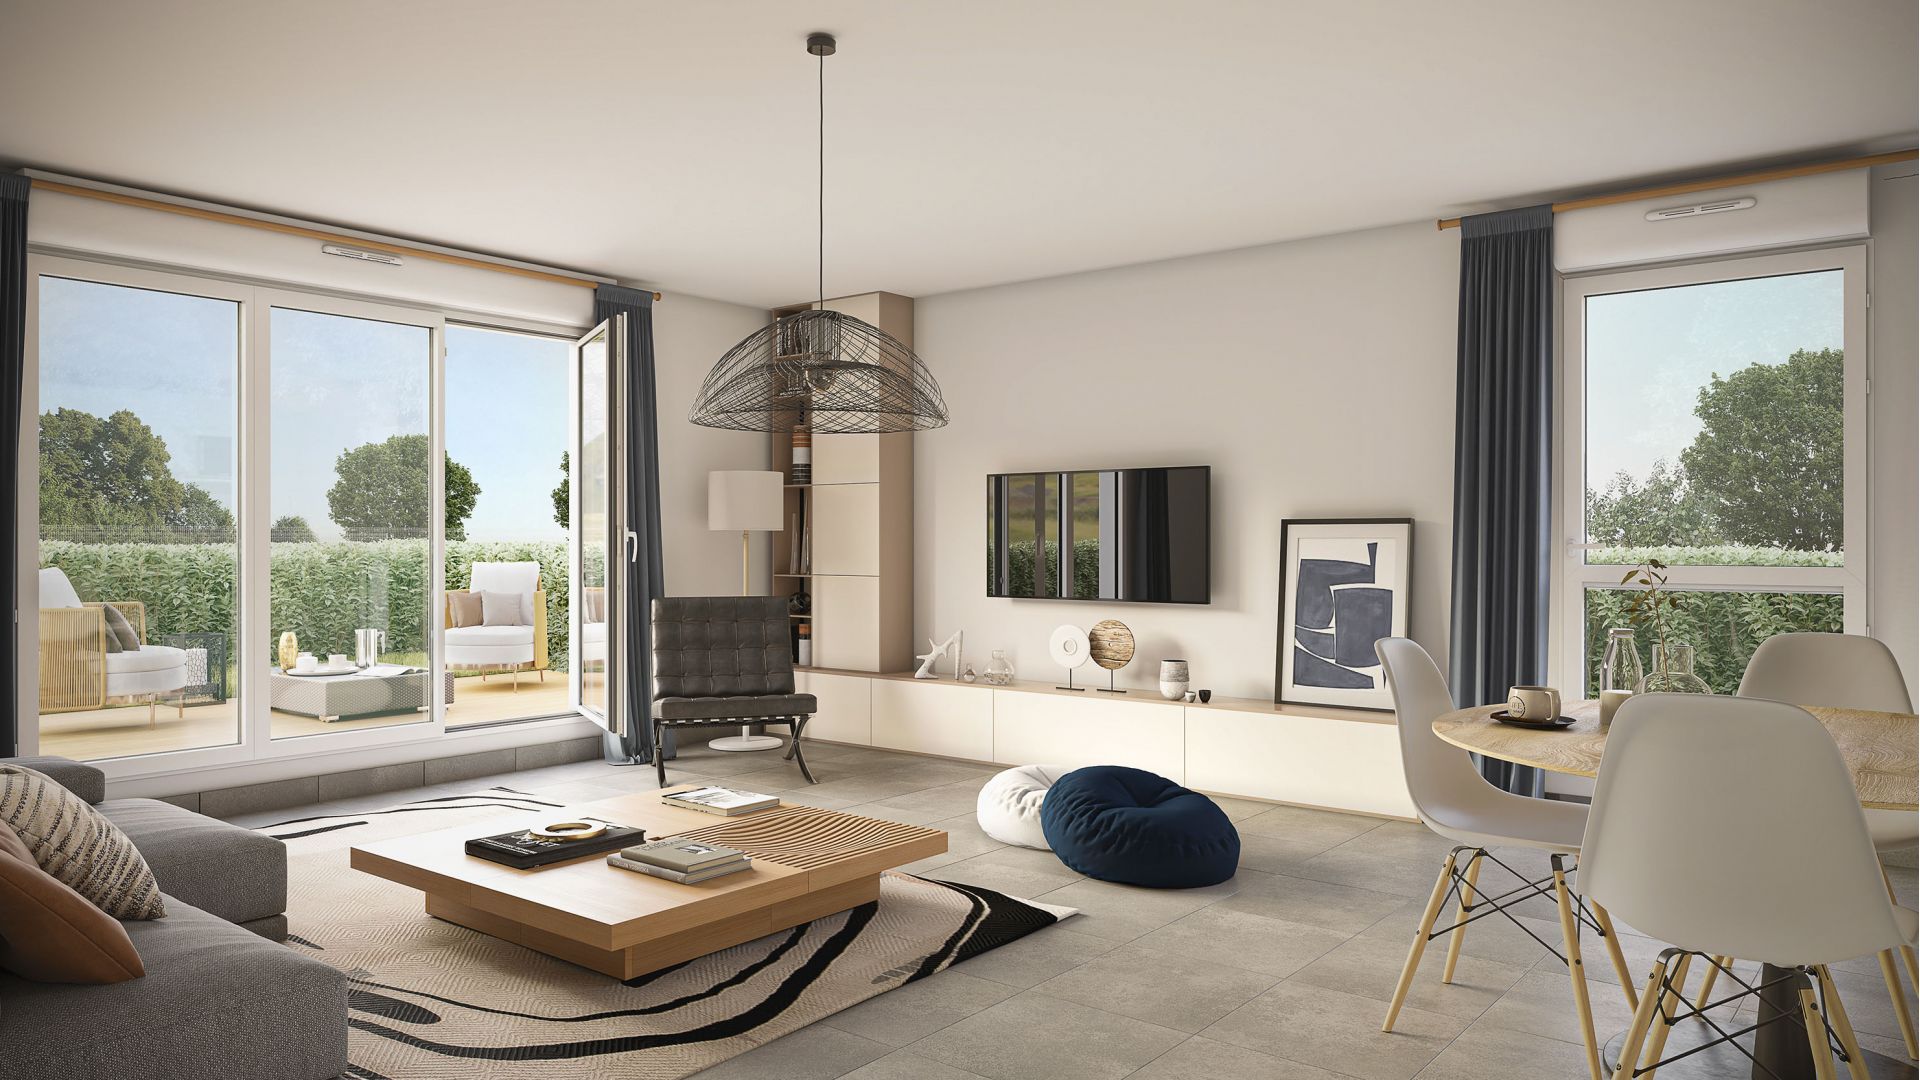 Greencity immobilier - achat appartements neufs du T2 au T3 - Résidence Val D'Olmières - 31120 Roquettes